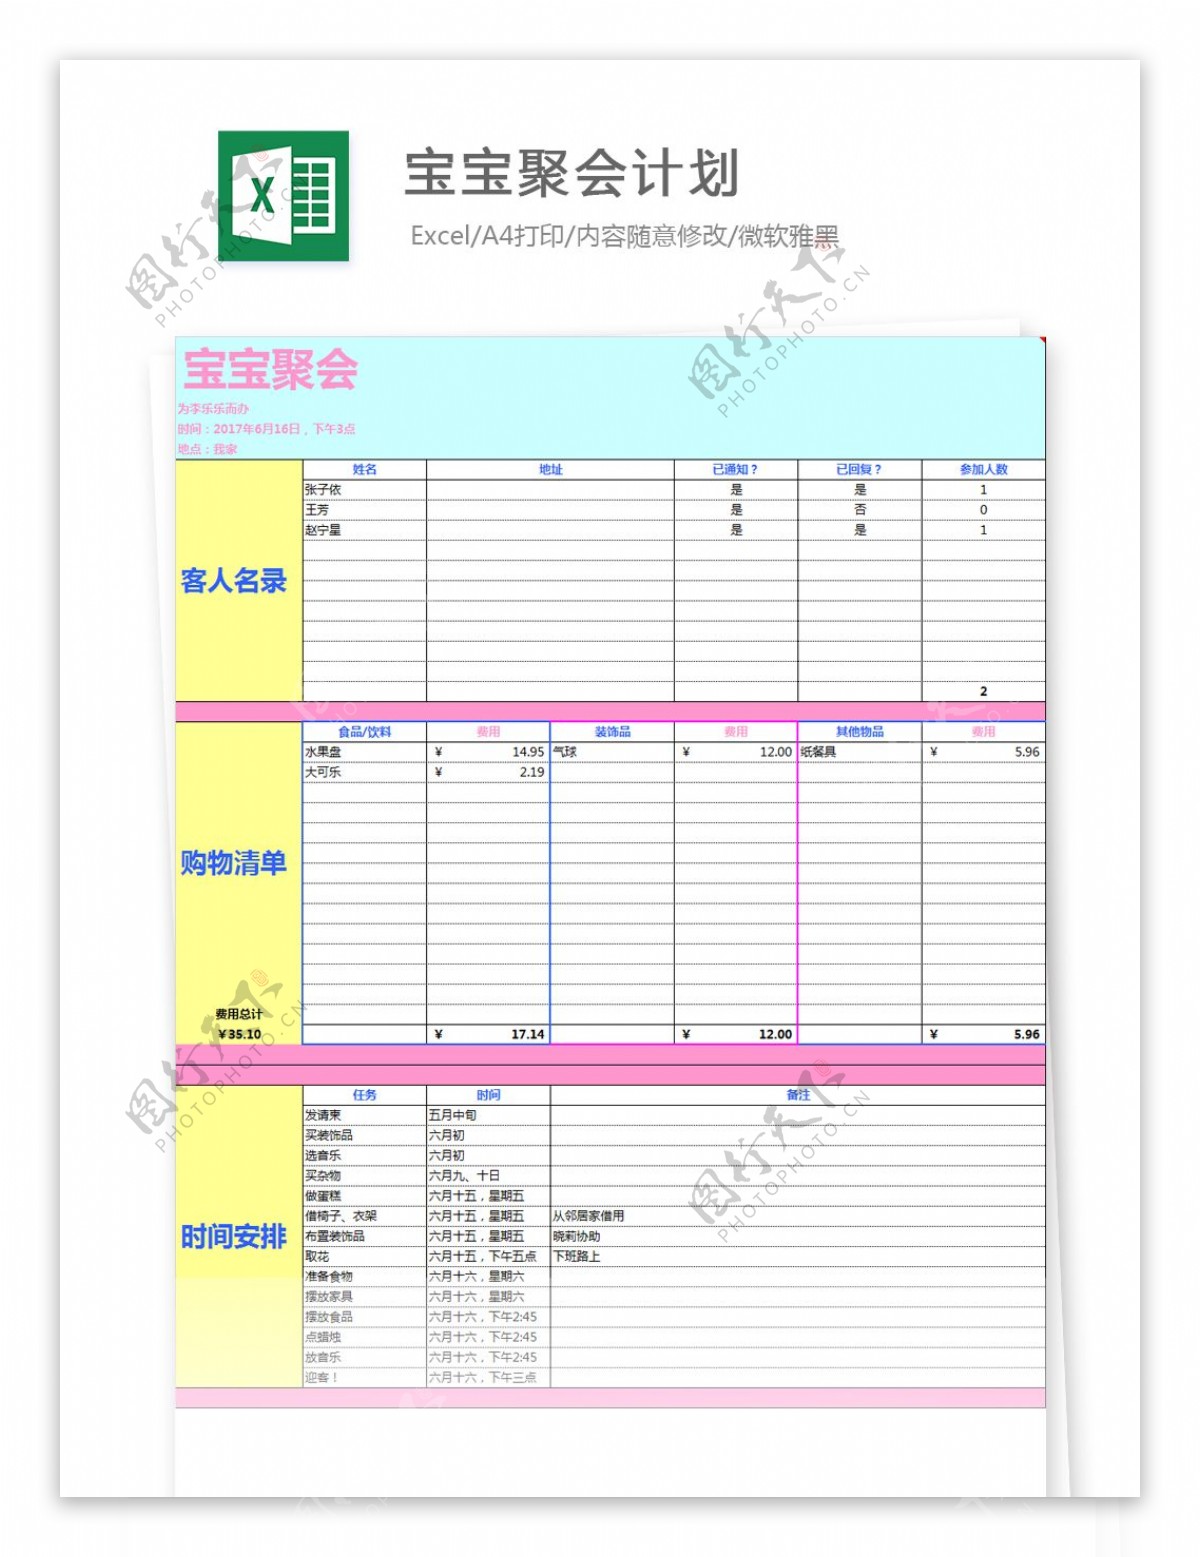 宝宝聚会计划Excel模板图表一览图